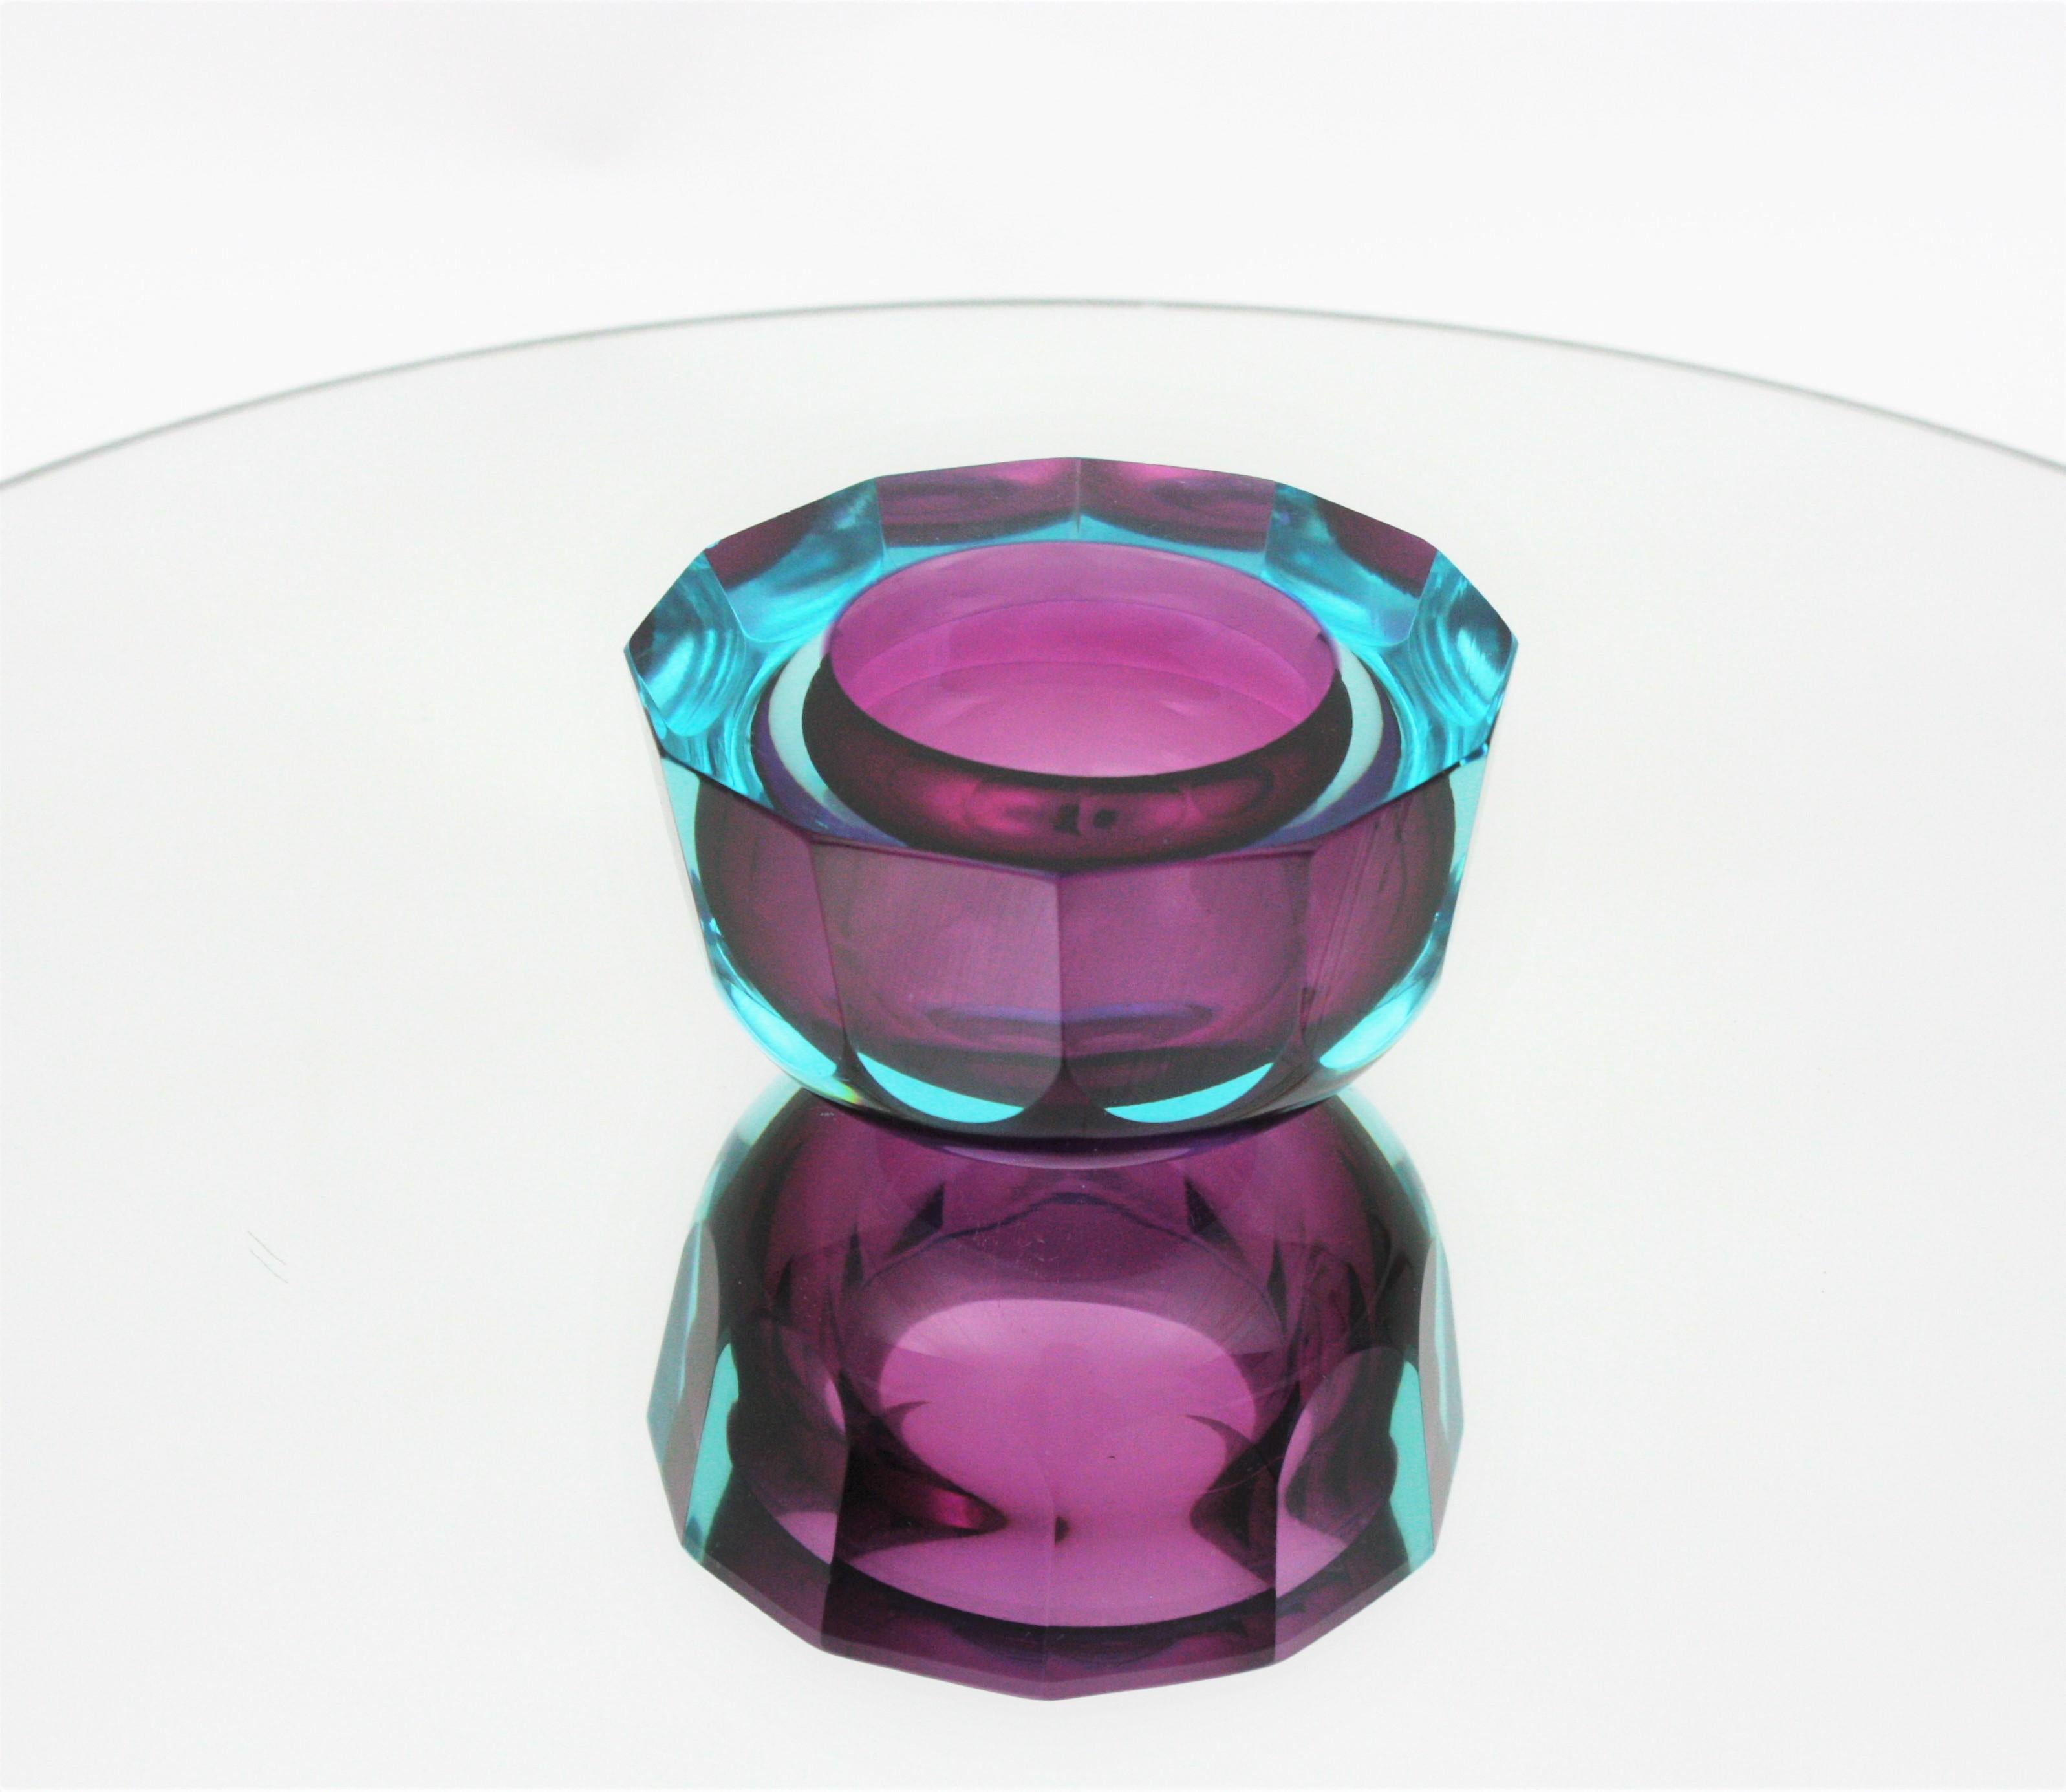 Moderne Mitte des Jahrhunderts Flavio Poli für Seguso Vetri d'Arte runde facettierte lila/ und blaue Murano Glas Sommerso Schale, Italien, 1960er Jahre.
Diese mundgeblasene Glasschale besteht aus violettem Glas, das in blaues Glas getaucht ist.